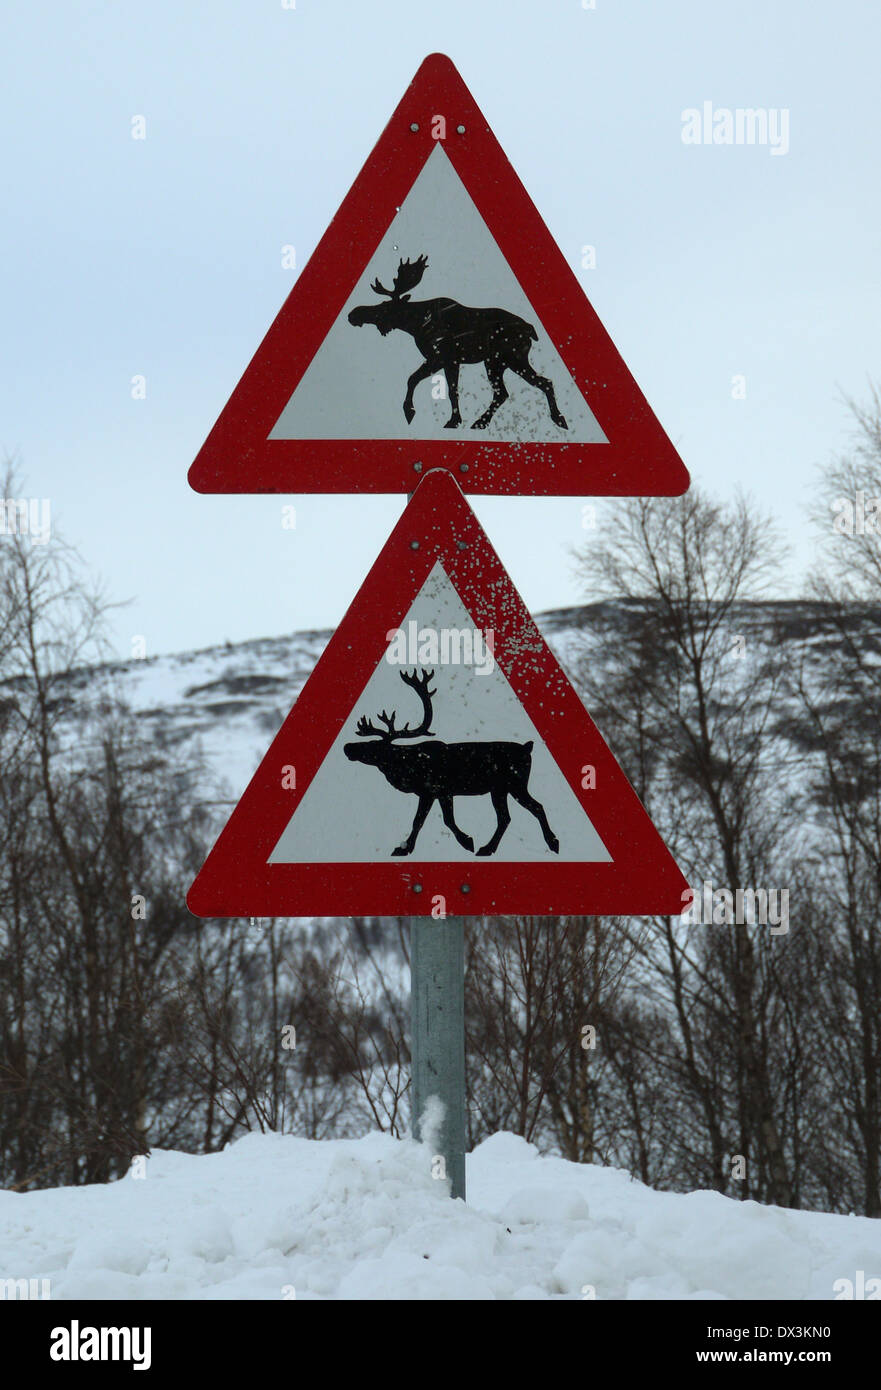 L'orignal et le renne panneaux d'avertissement, le nord de la norvège Banque D'Images